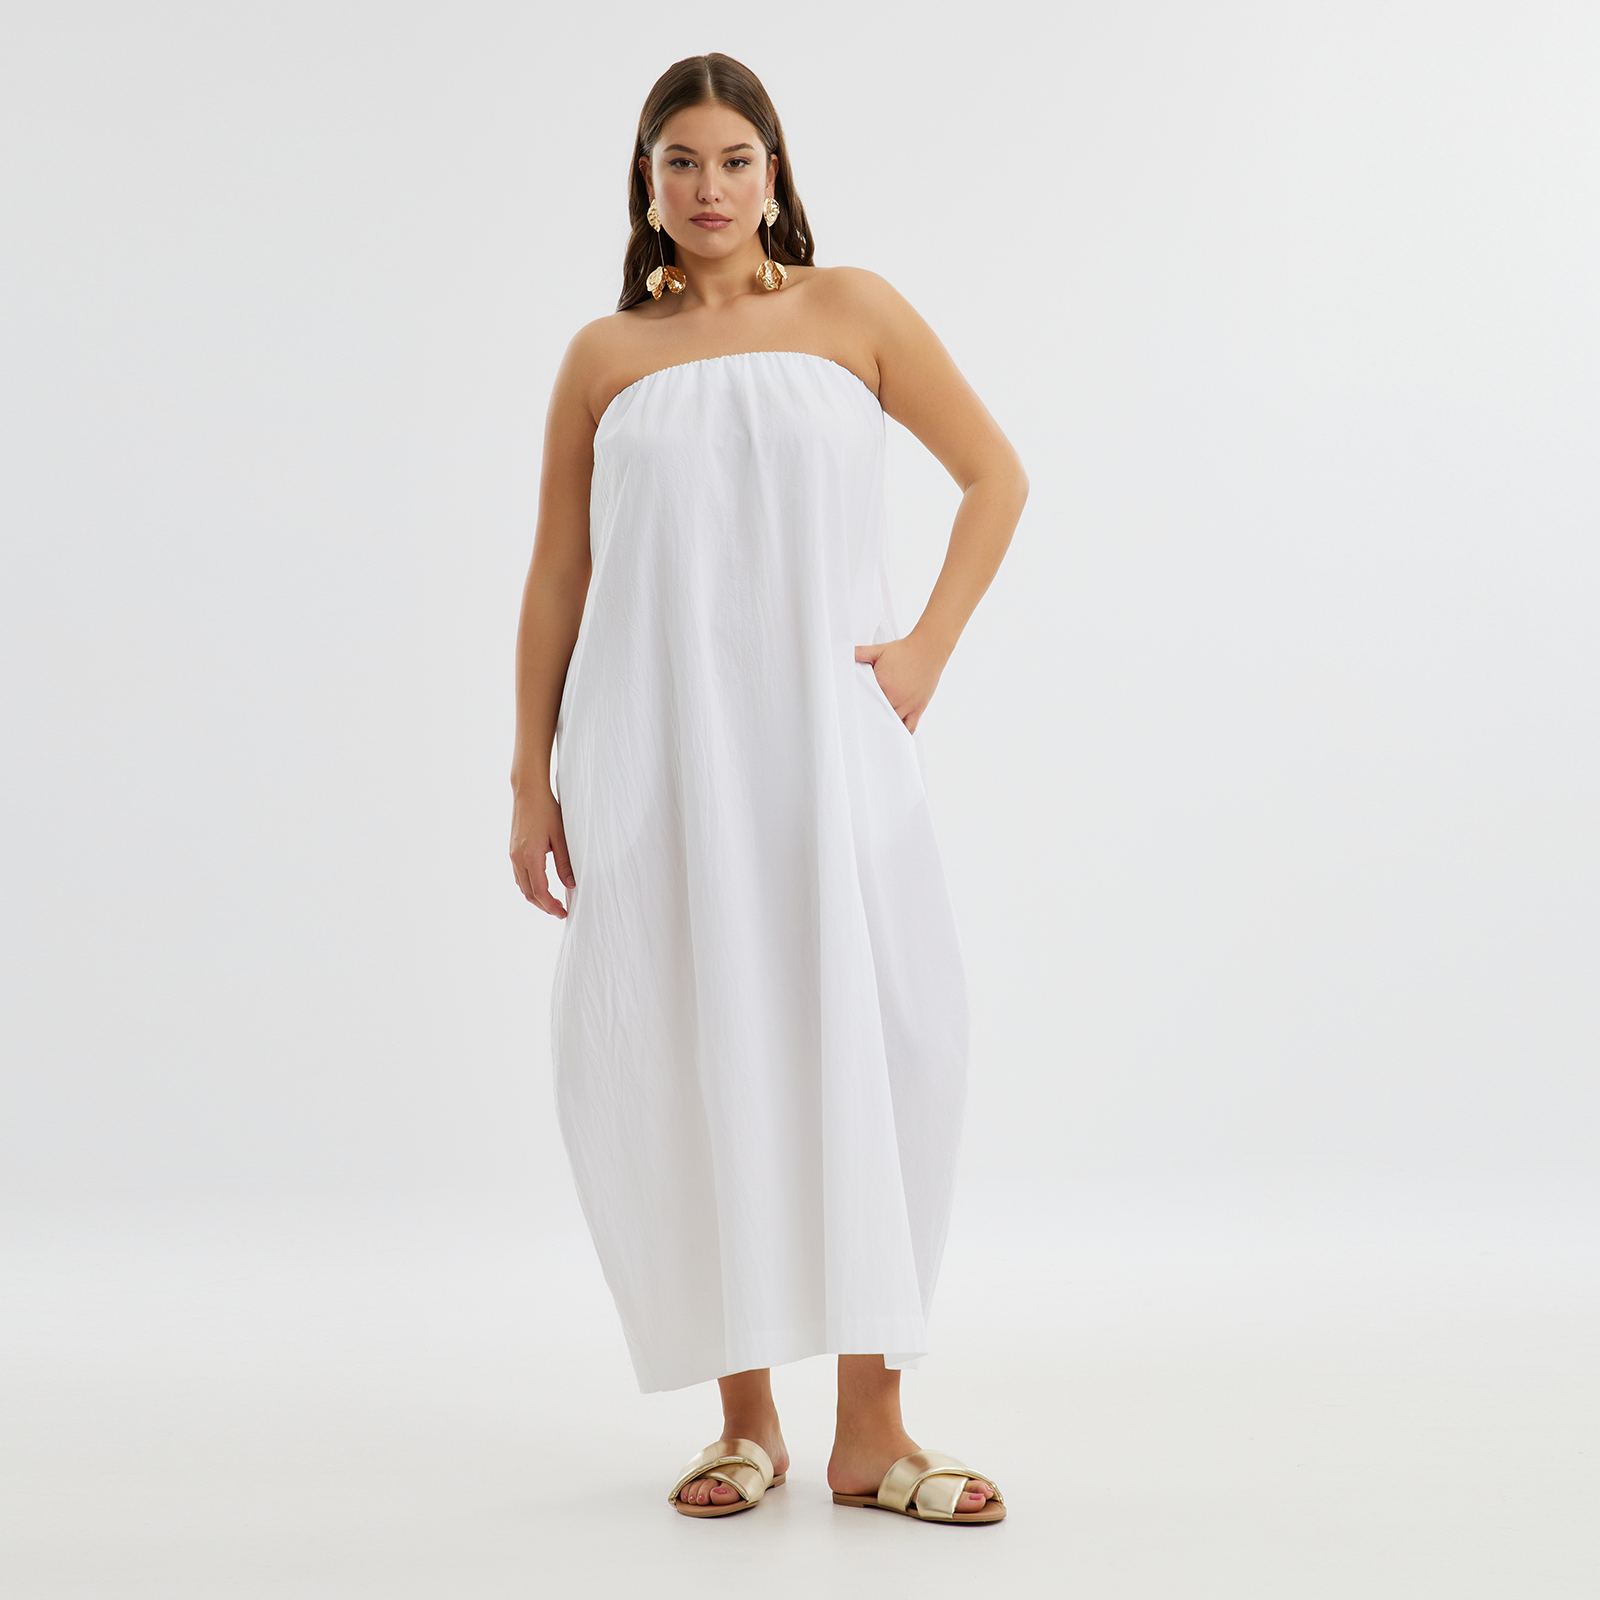 Φόρεμα βαμβακερό strapless 8101.7242-white